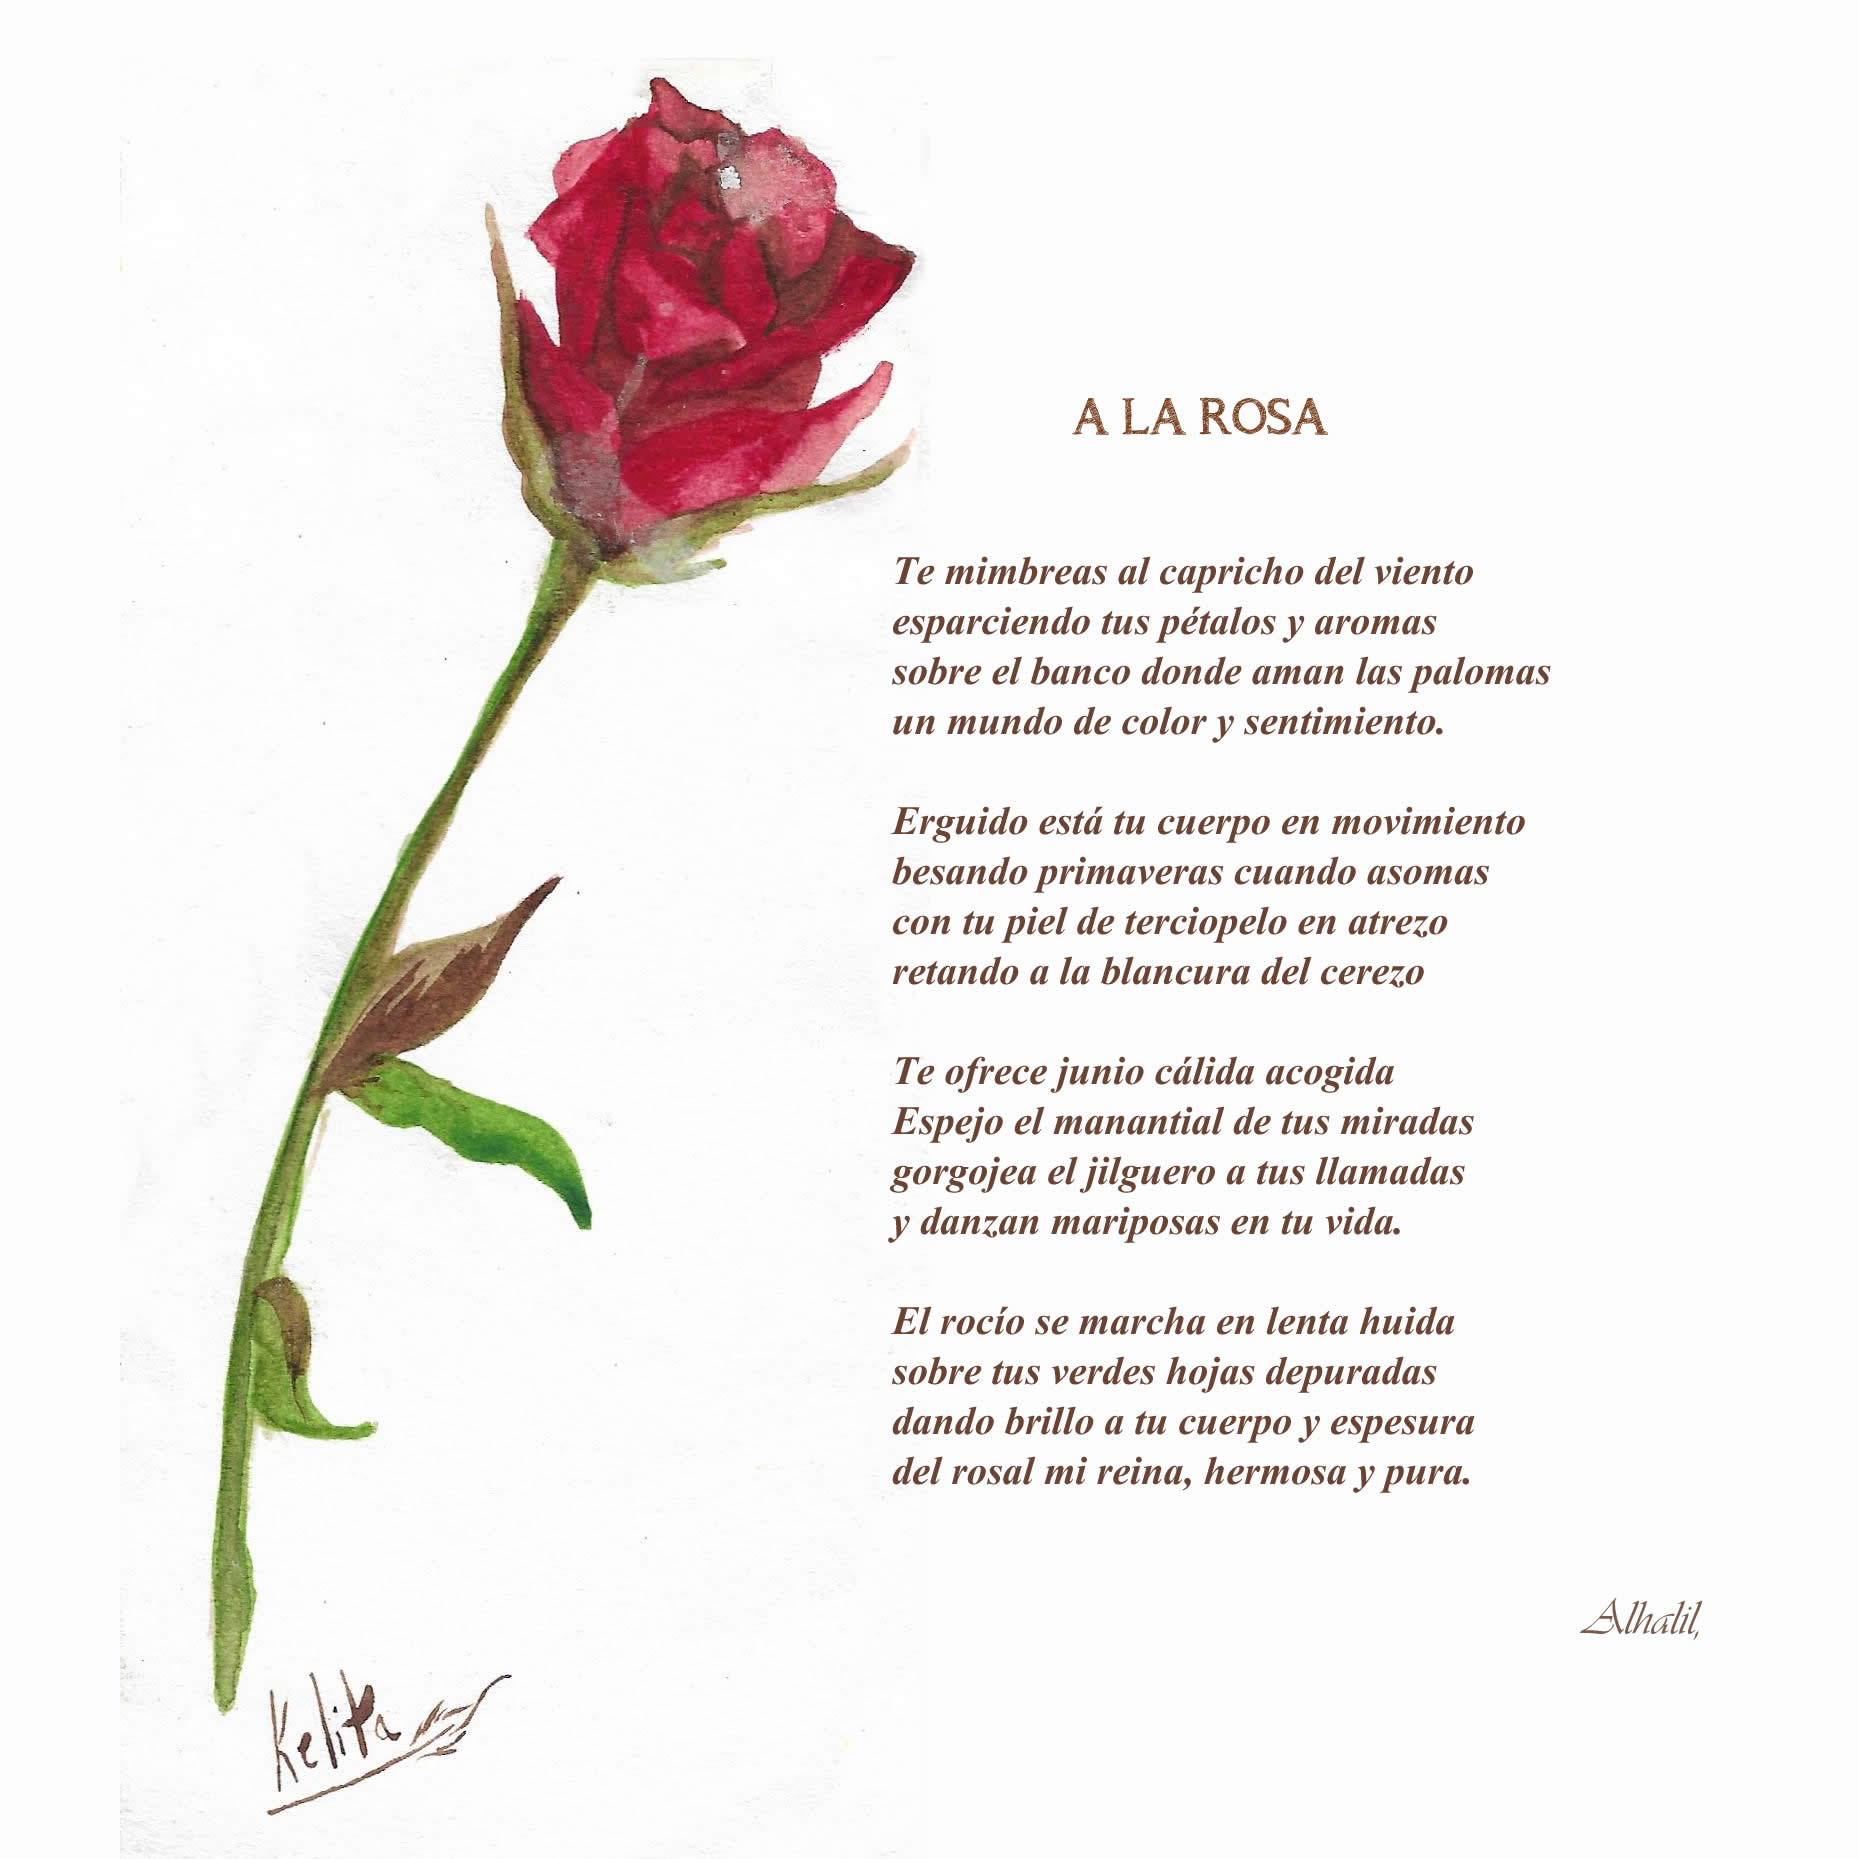 La Rosa como Metáfora: Belleza, Pasión y Significado en la Poesía